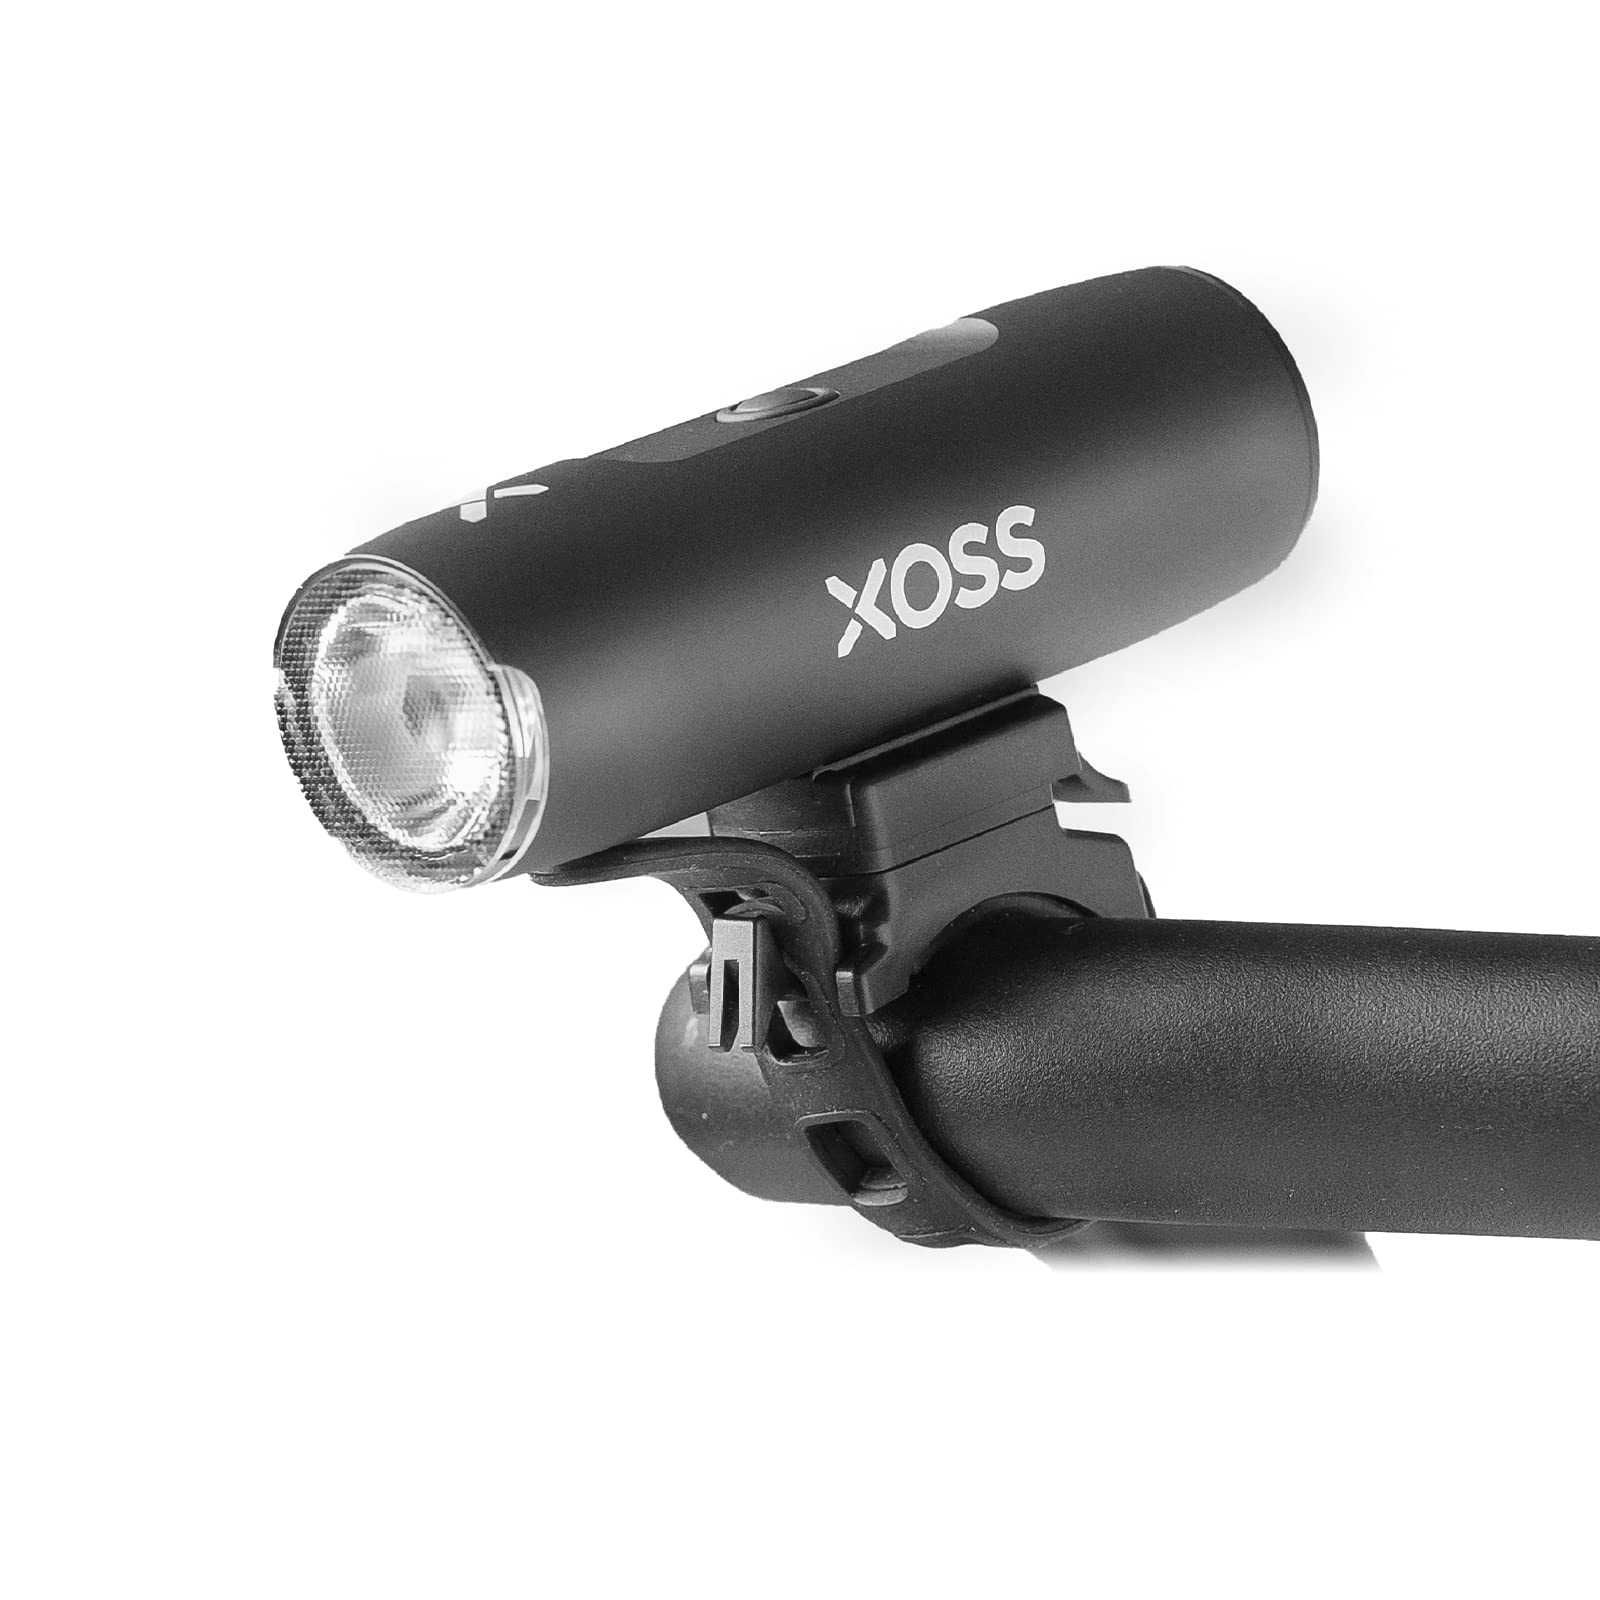 Lampka rowerowa przednia XOSS XL-800 - Nowa